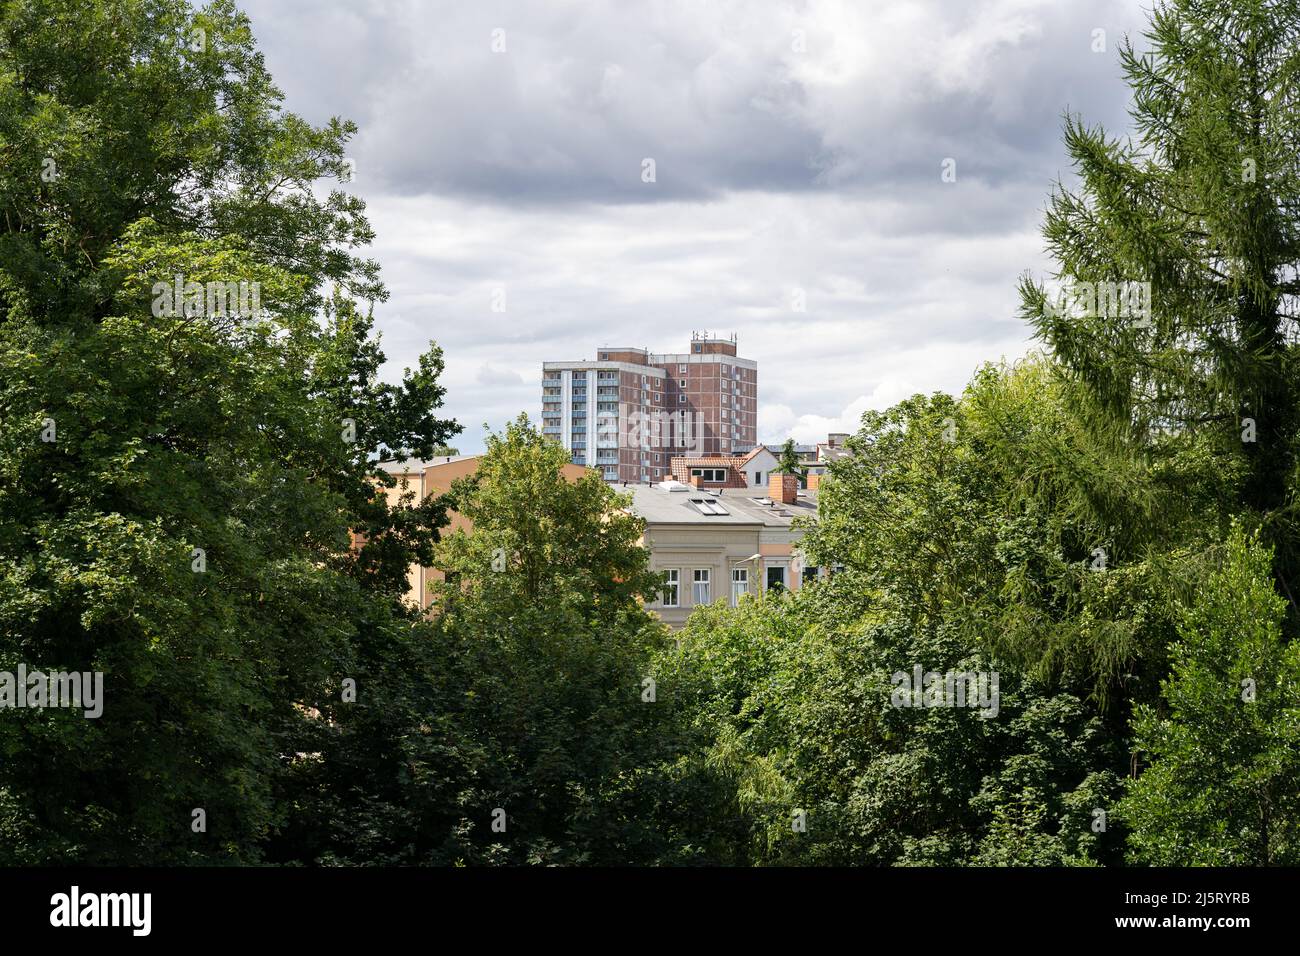 Altes Hochhaus in der Stadt vor kleinen Häusern. Großer dunkler Wolkenkratzer mit grünen Bäumen davor. Ostdeutsche Architektur Stockfoto